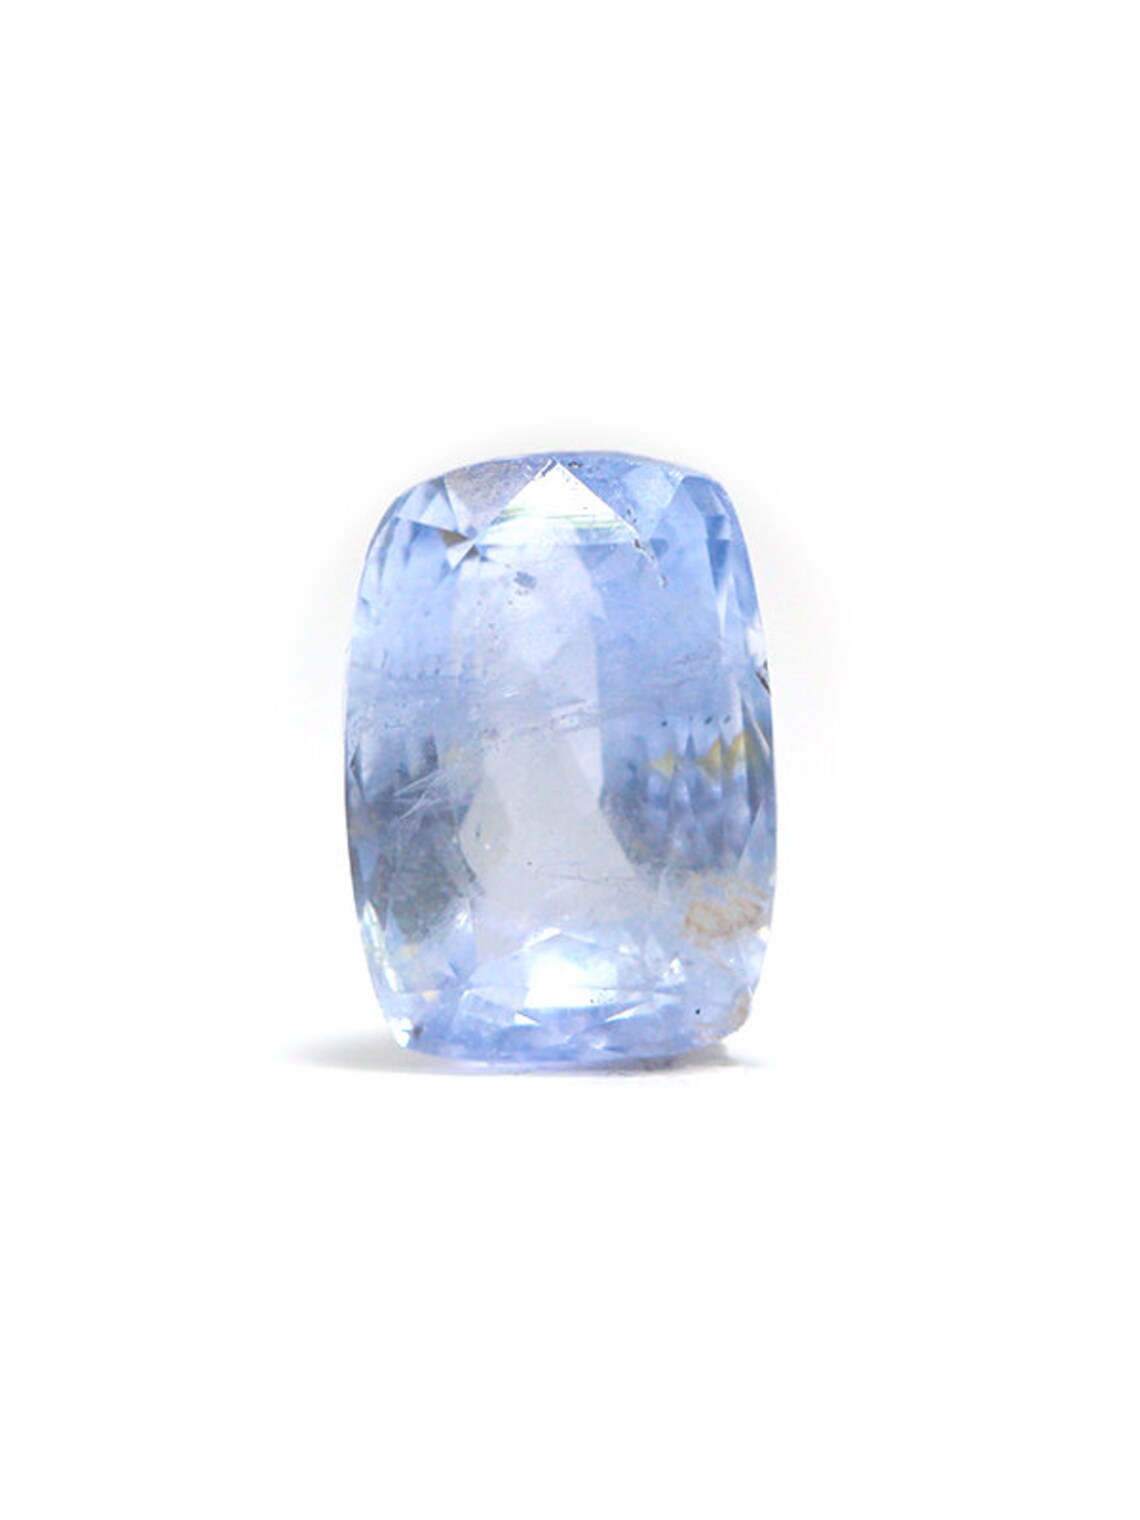 Natural Blue Sapphire 5.02 carat